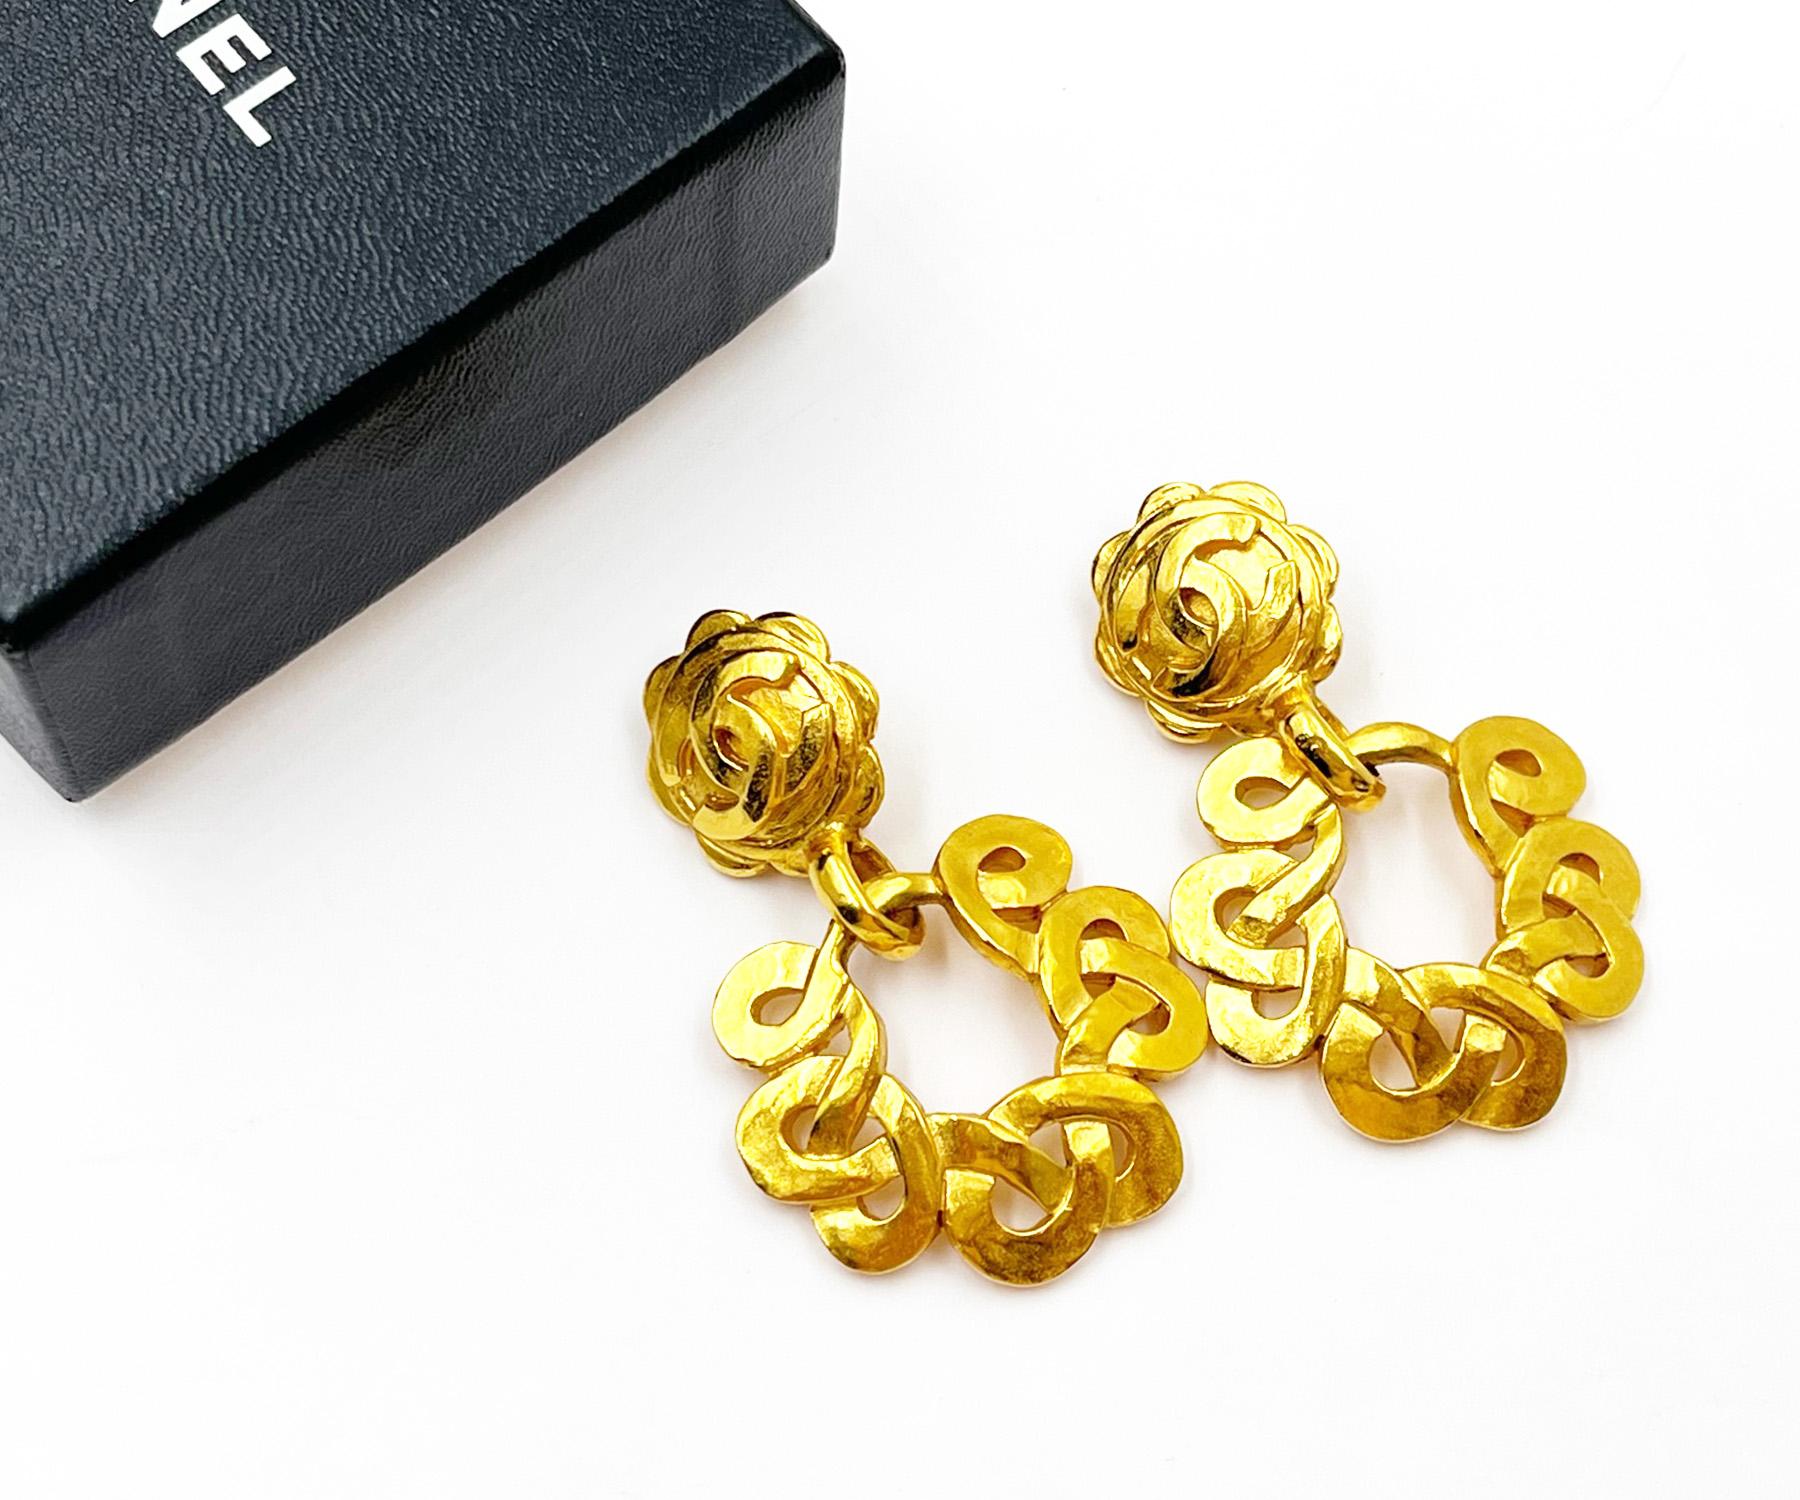 Chanel Vintage vergoldete CC gedrehte runde Clip-Ohrringe mit Blumenmuster

* Markiert 97
* Hergestellt in Frankreich
* Kommt mit dem Originalkarton

- Es ist ungefähr 2,1